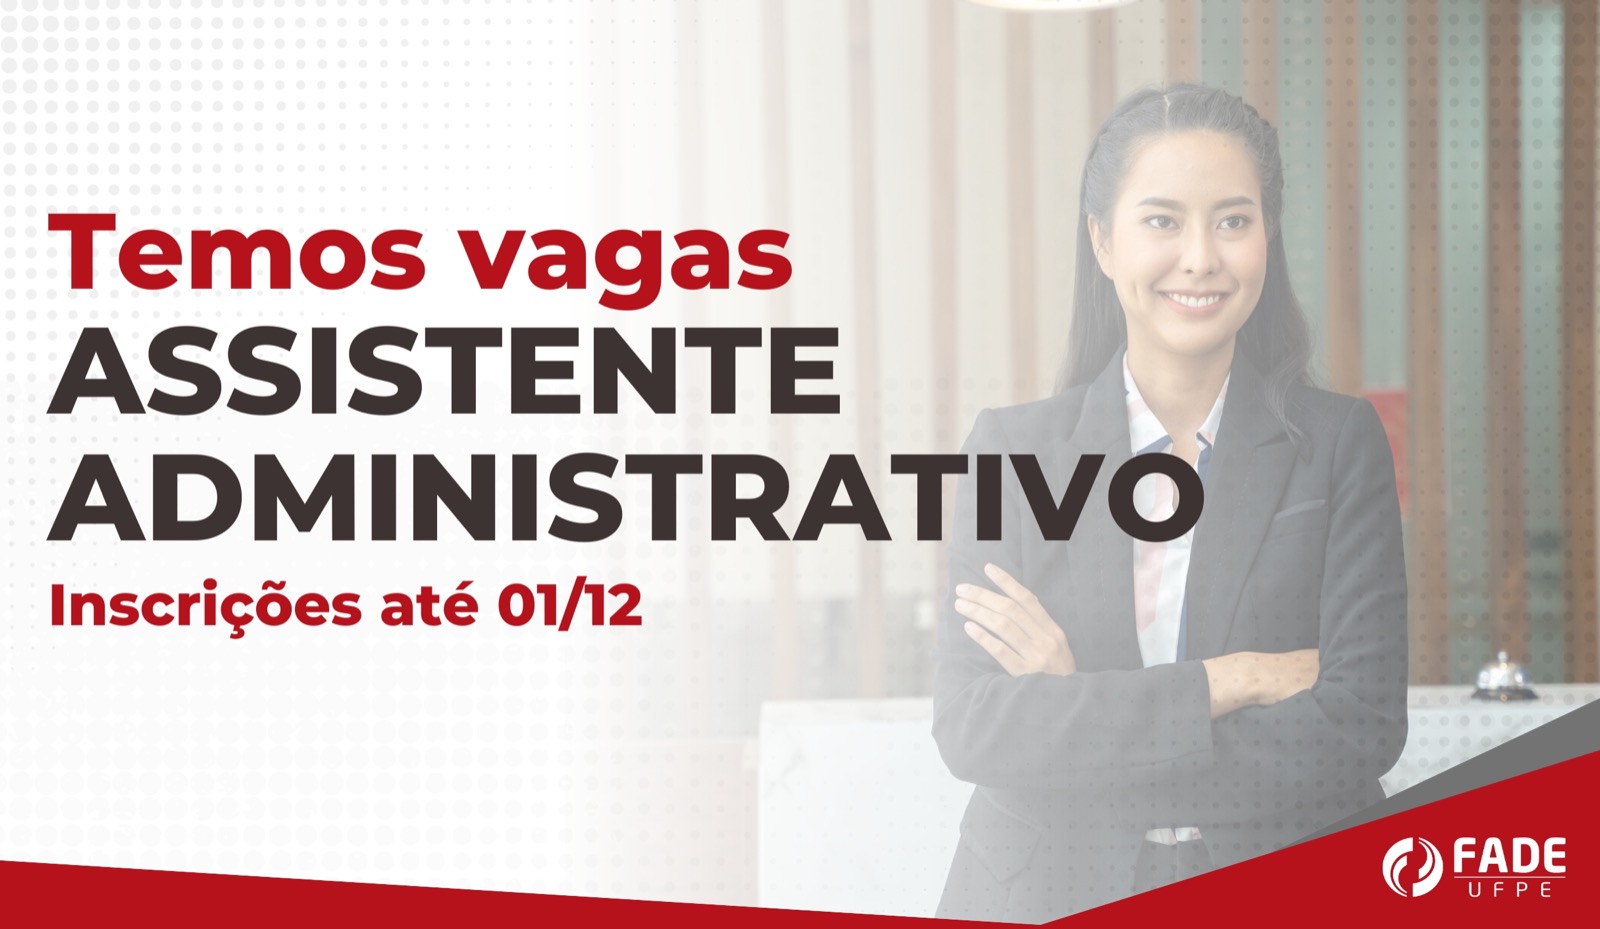 Assistente Administrativo | Vaga Fade-UFPE